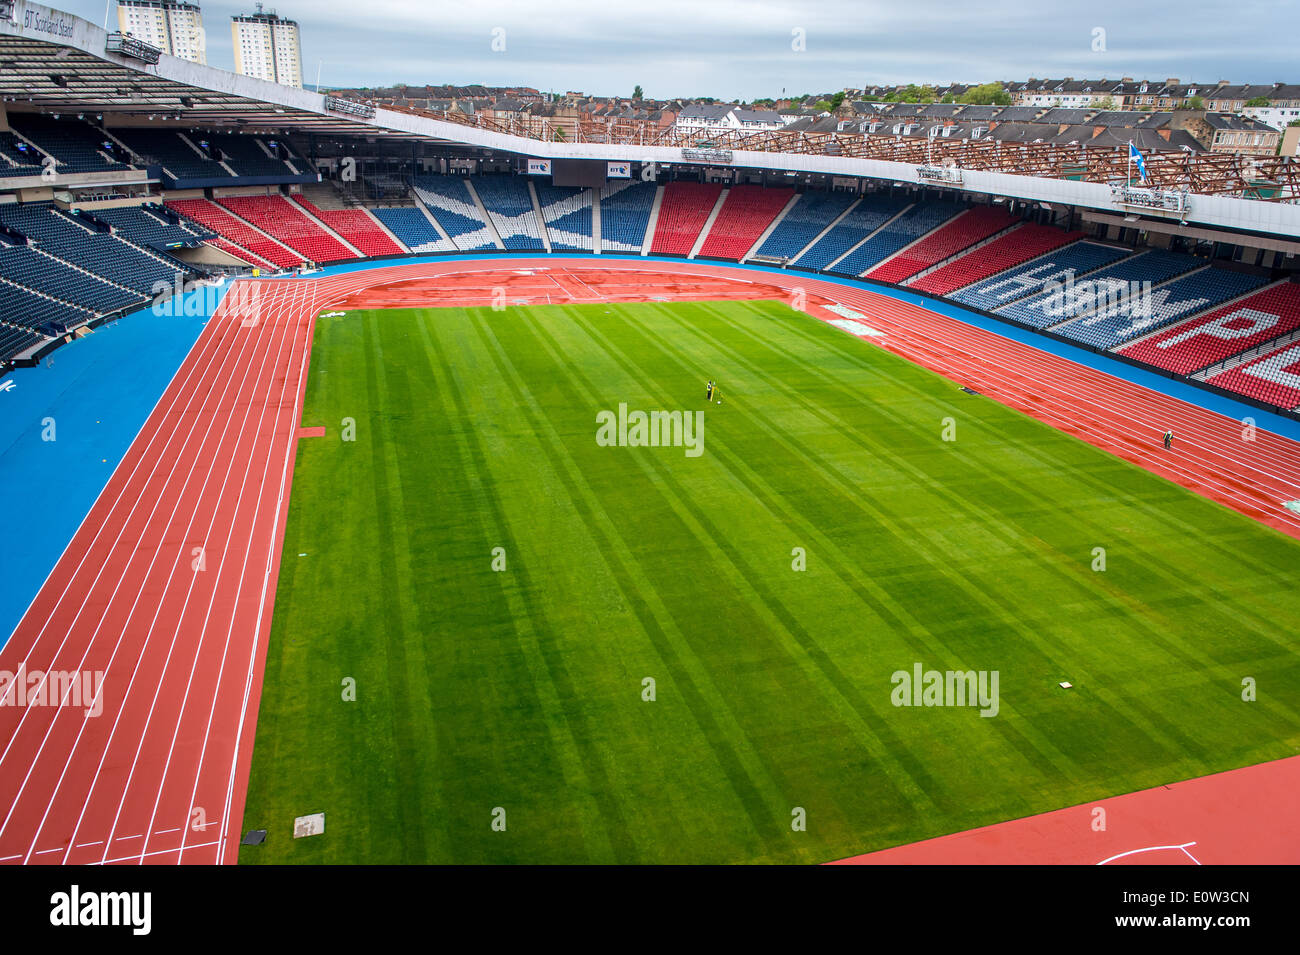 Scozia stadio nazionale Hampden Park trasformato in anathletics arena per il Glasgow 2014 giochi del Commonwealth. Foto Stock